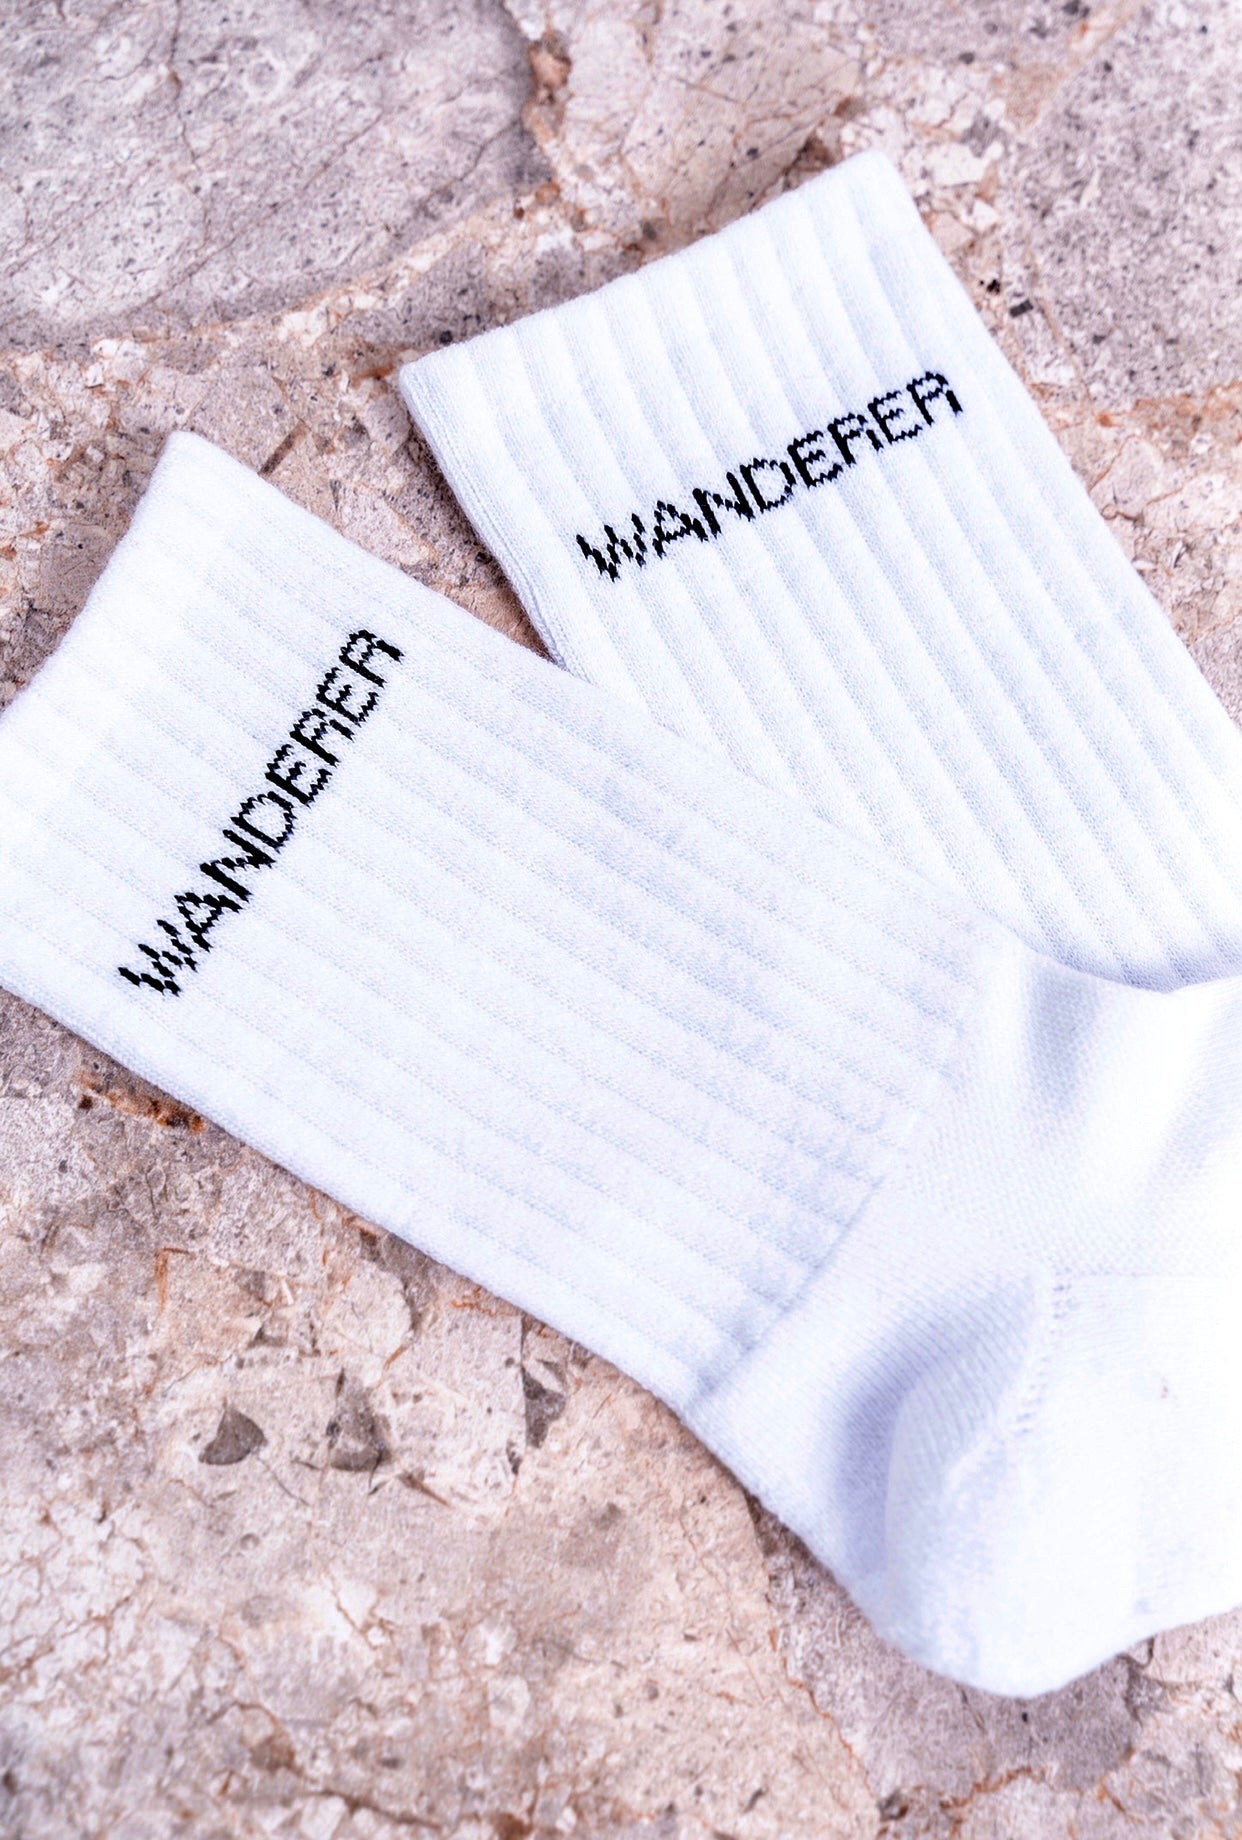 WANDERER Socks / Pack Of 2